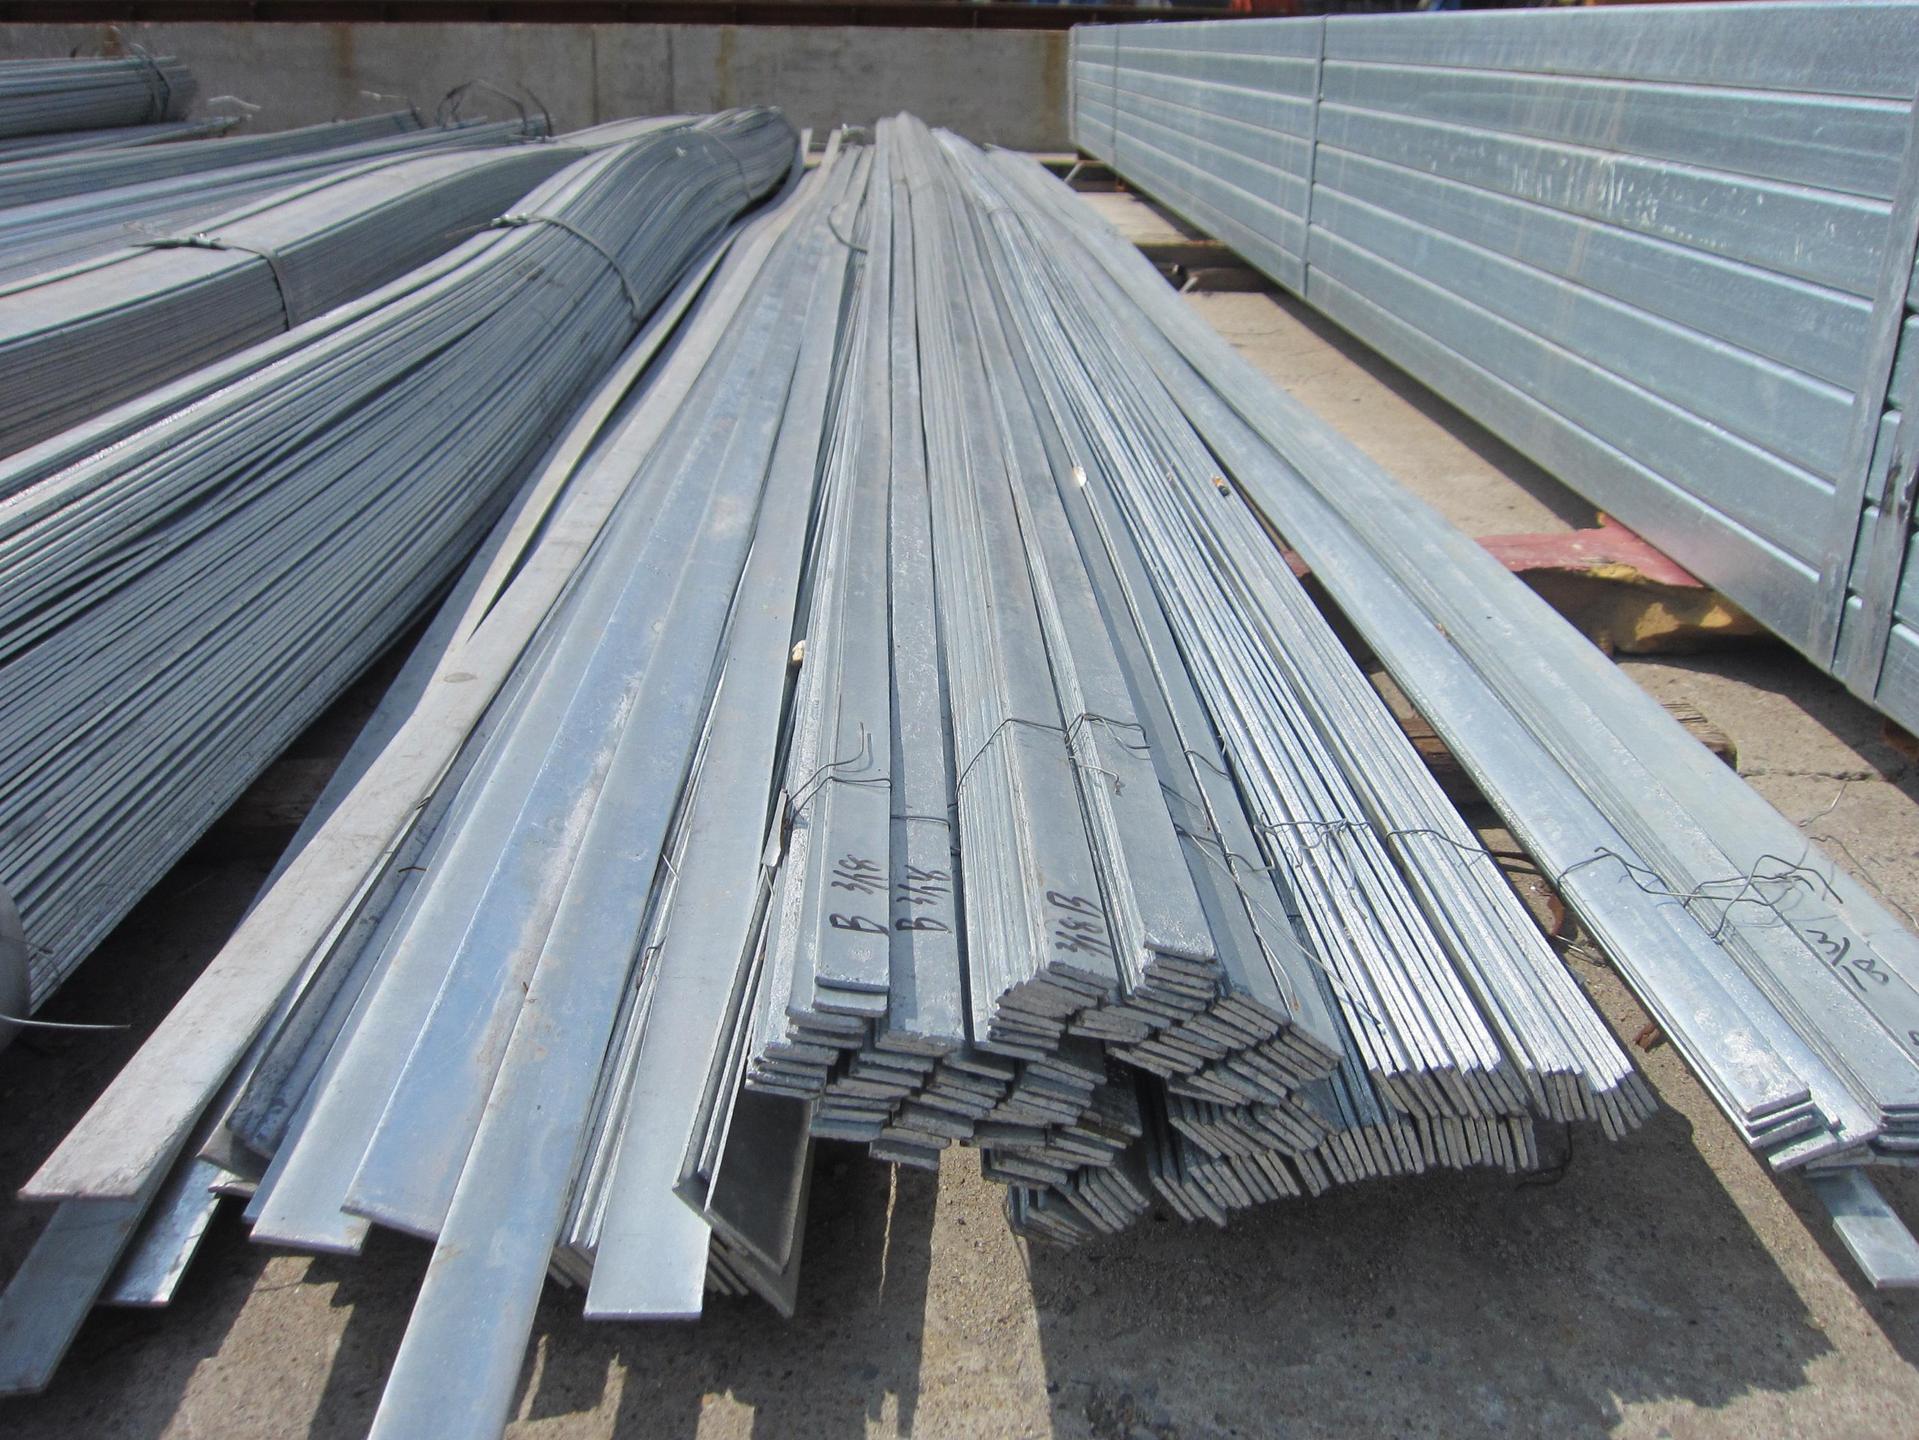 黑龙江鹤岗金属制品生产厂家现有现货5000吨扁钢规格型号齐全质优价廉期待您的来电